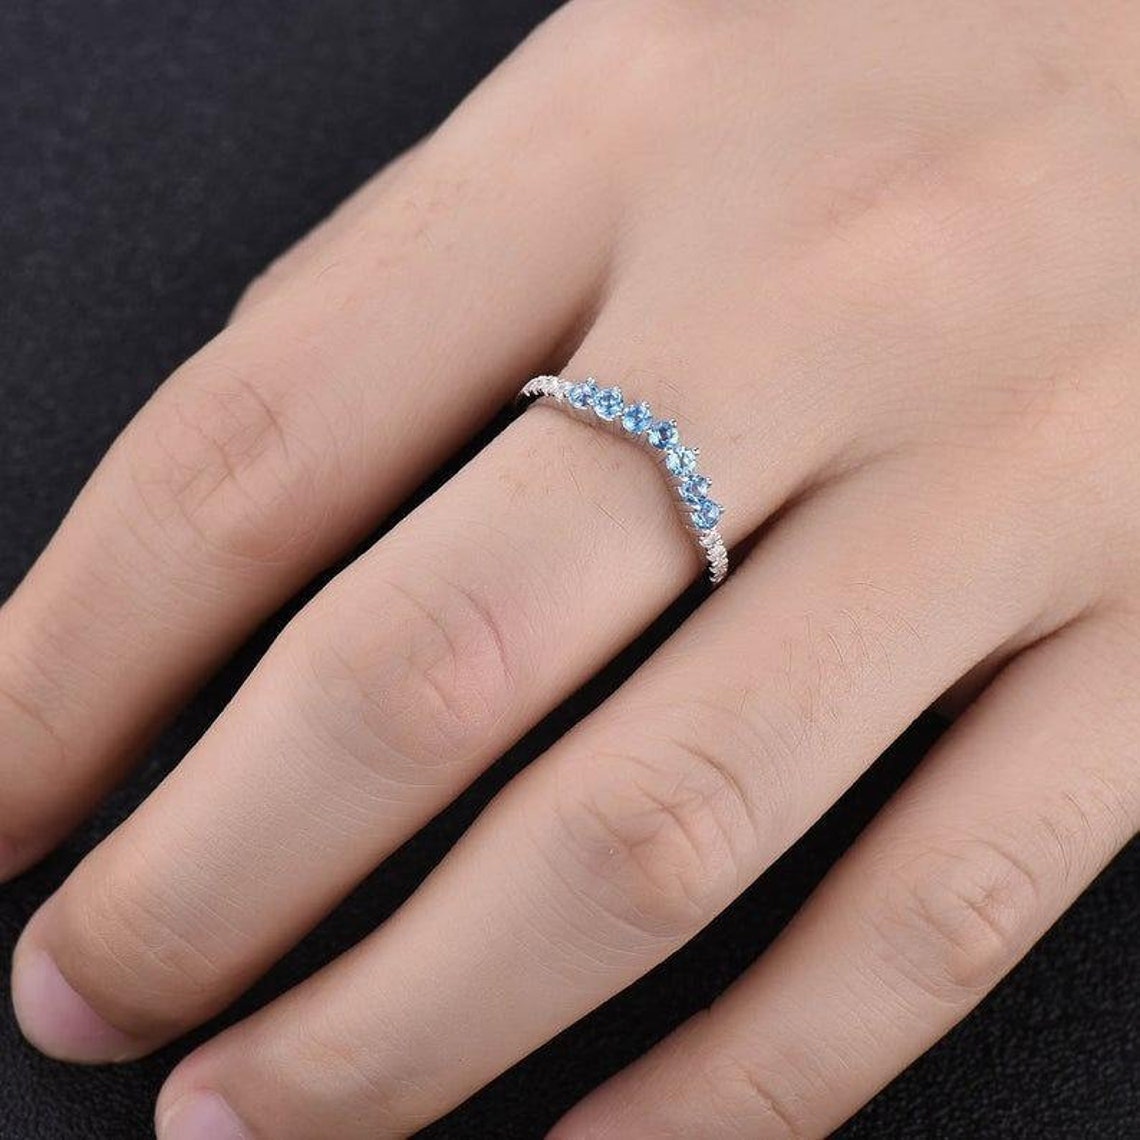 Blue Topaz Ring Wedding Ring Curved Stacking Ring Gemstone